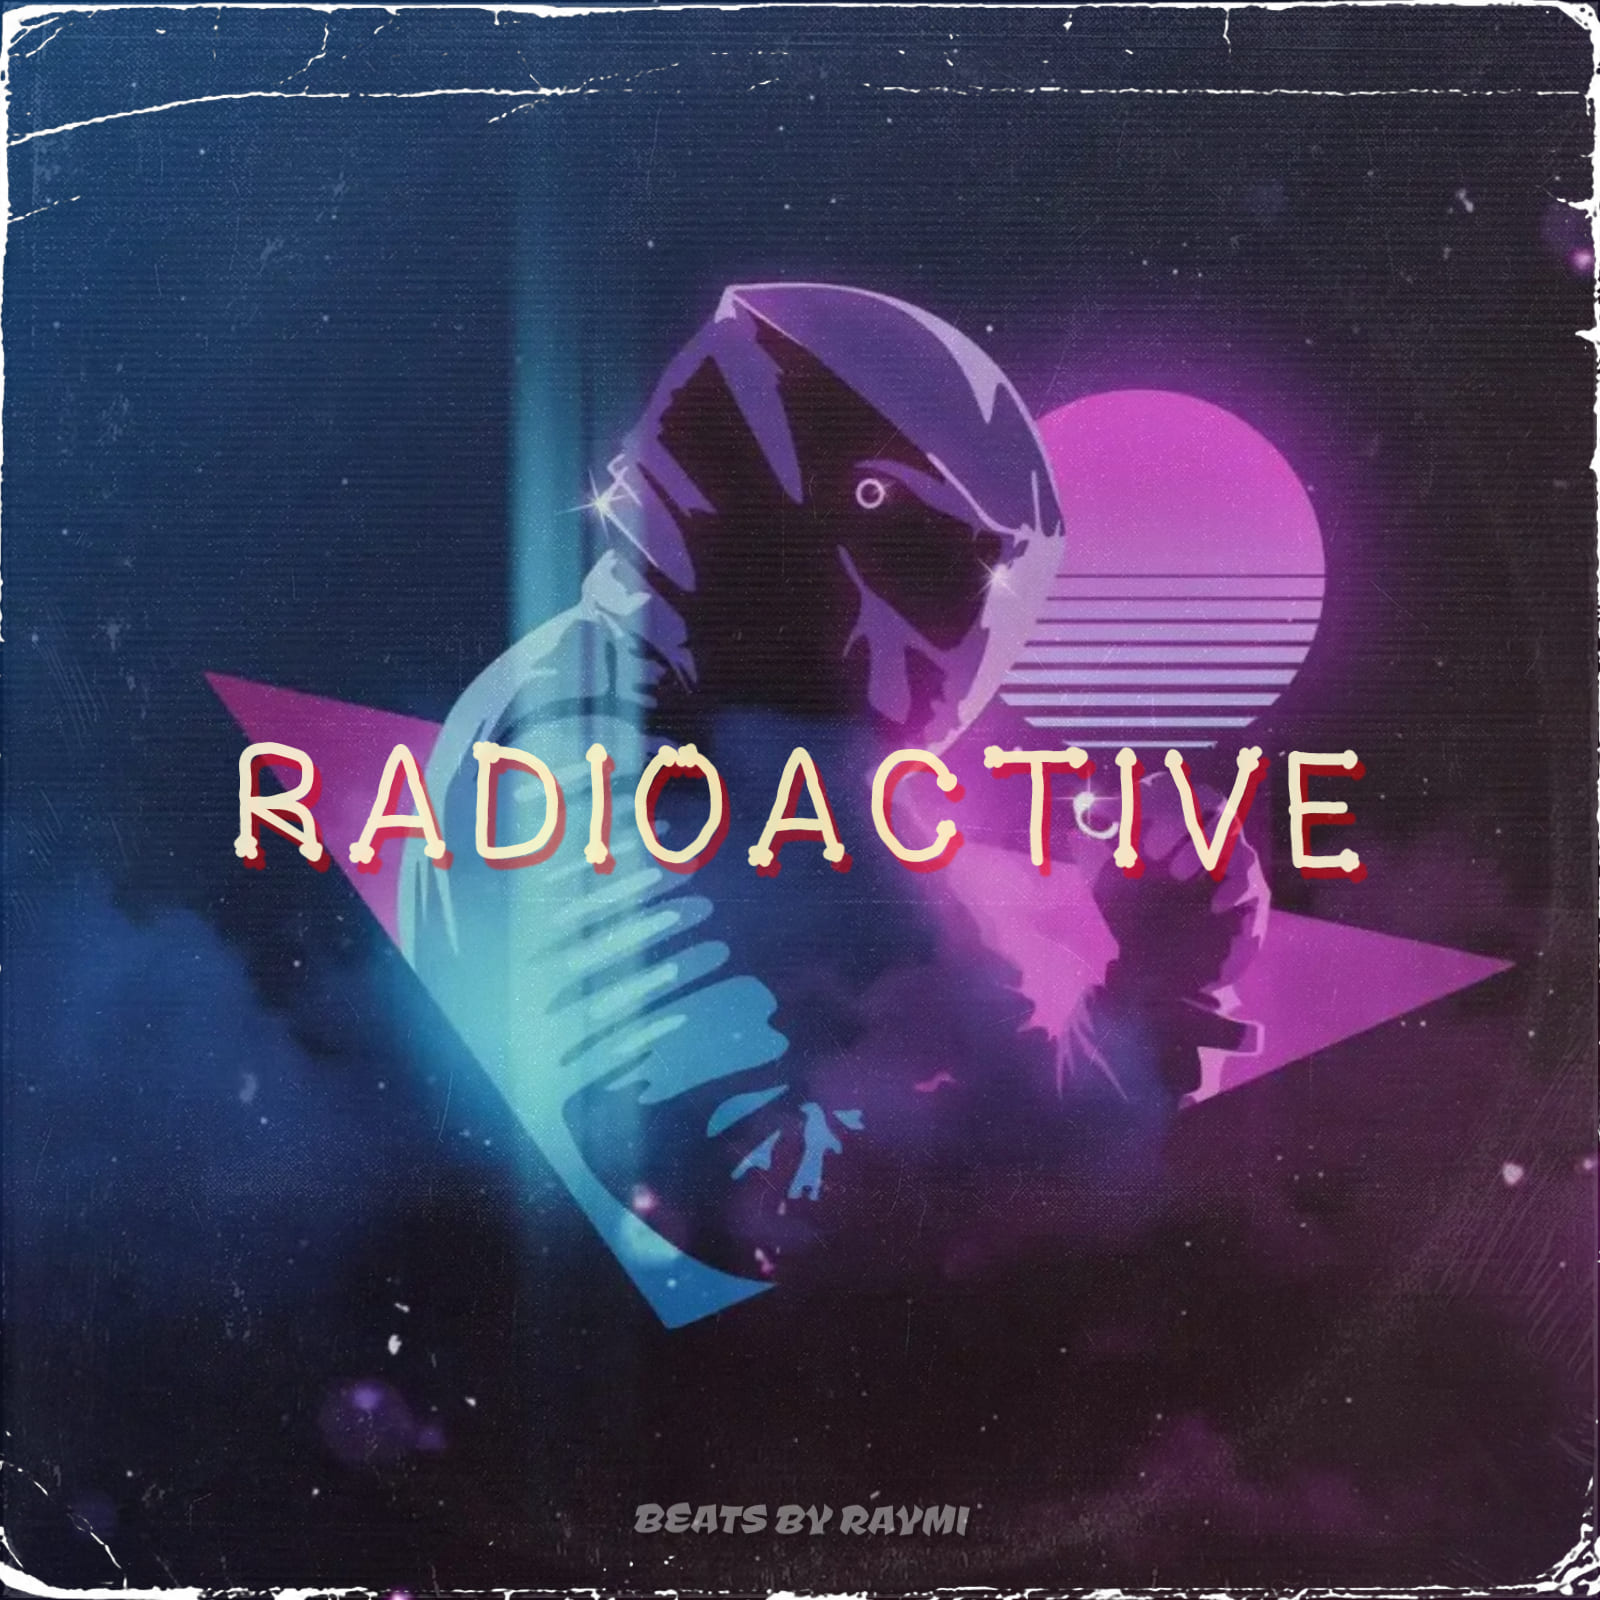 обложка бита, Raymi, музыка, cover, Radioactive (энергичный, зажигательный synth-pop бит)